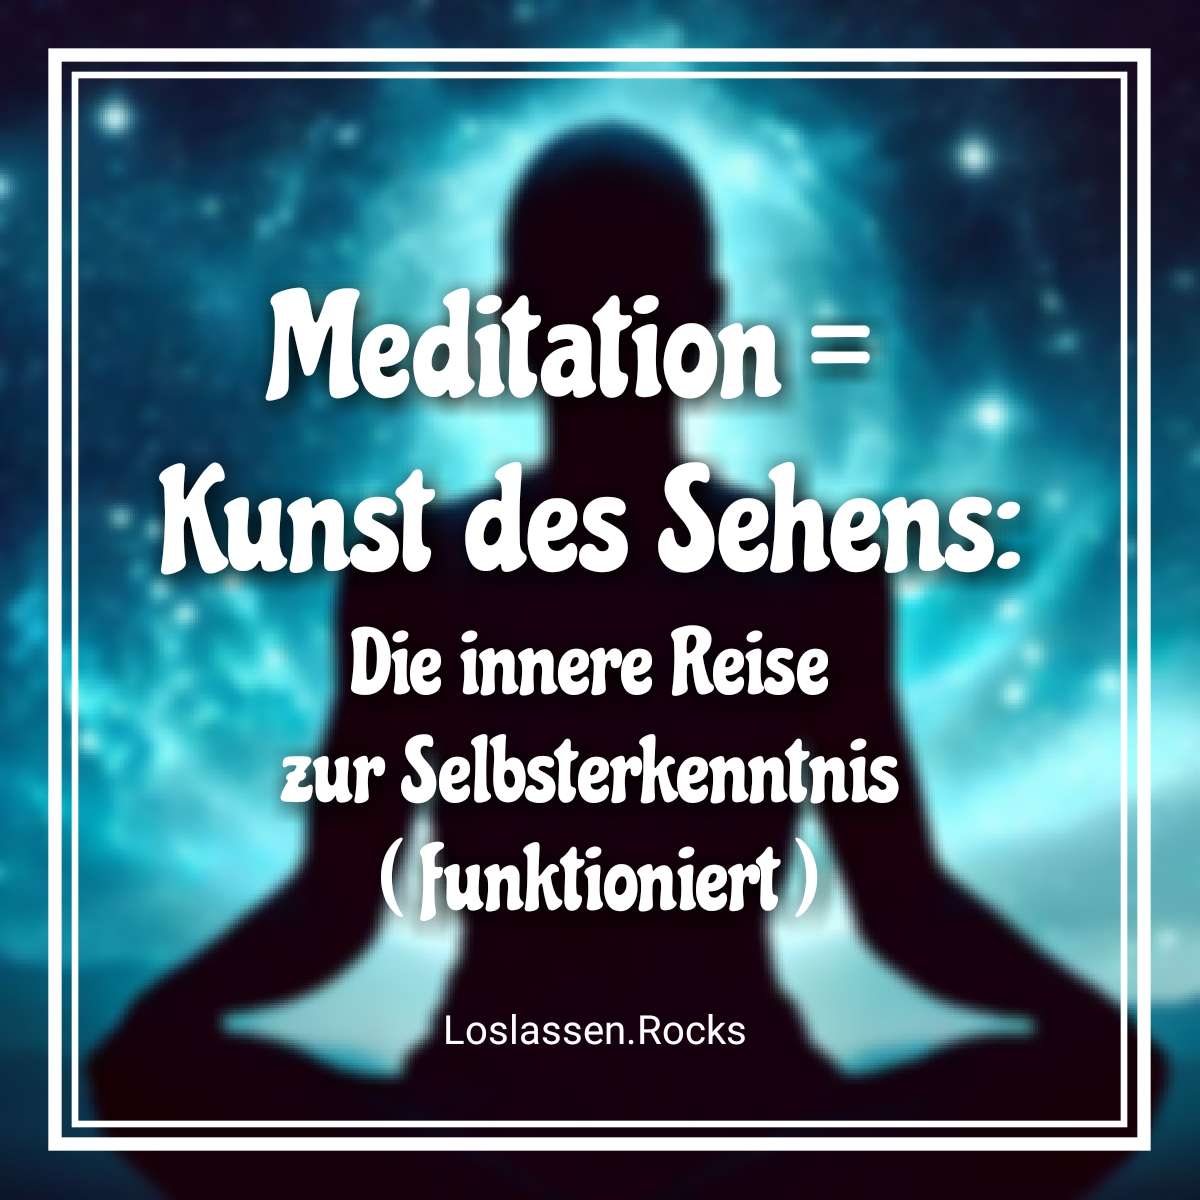 Meditation - Kunst des Sehens: Die innere Reise zur Selbsterkenntnis ( funktioniert )